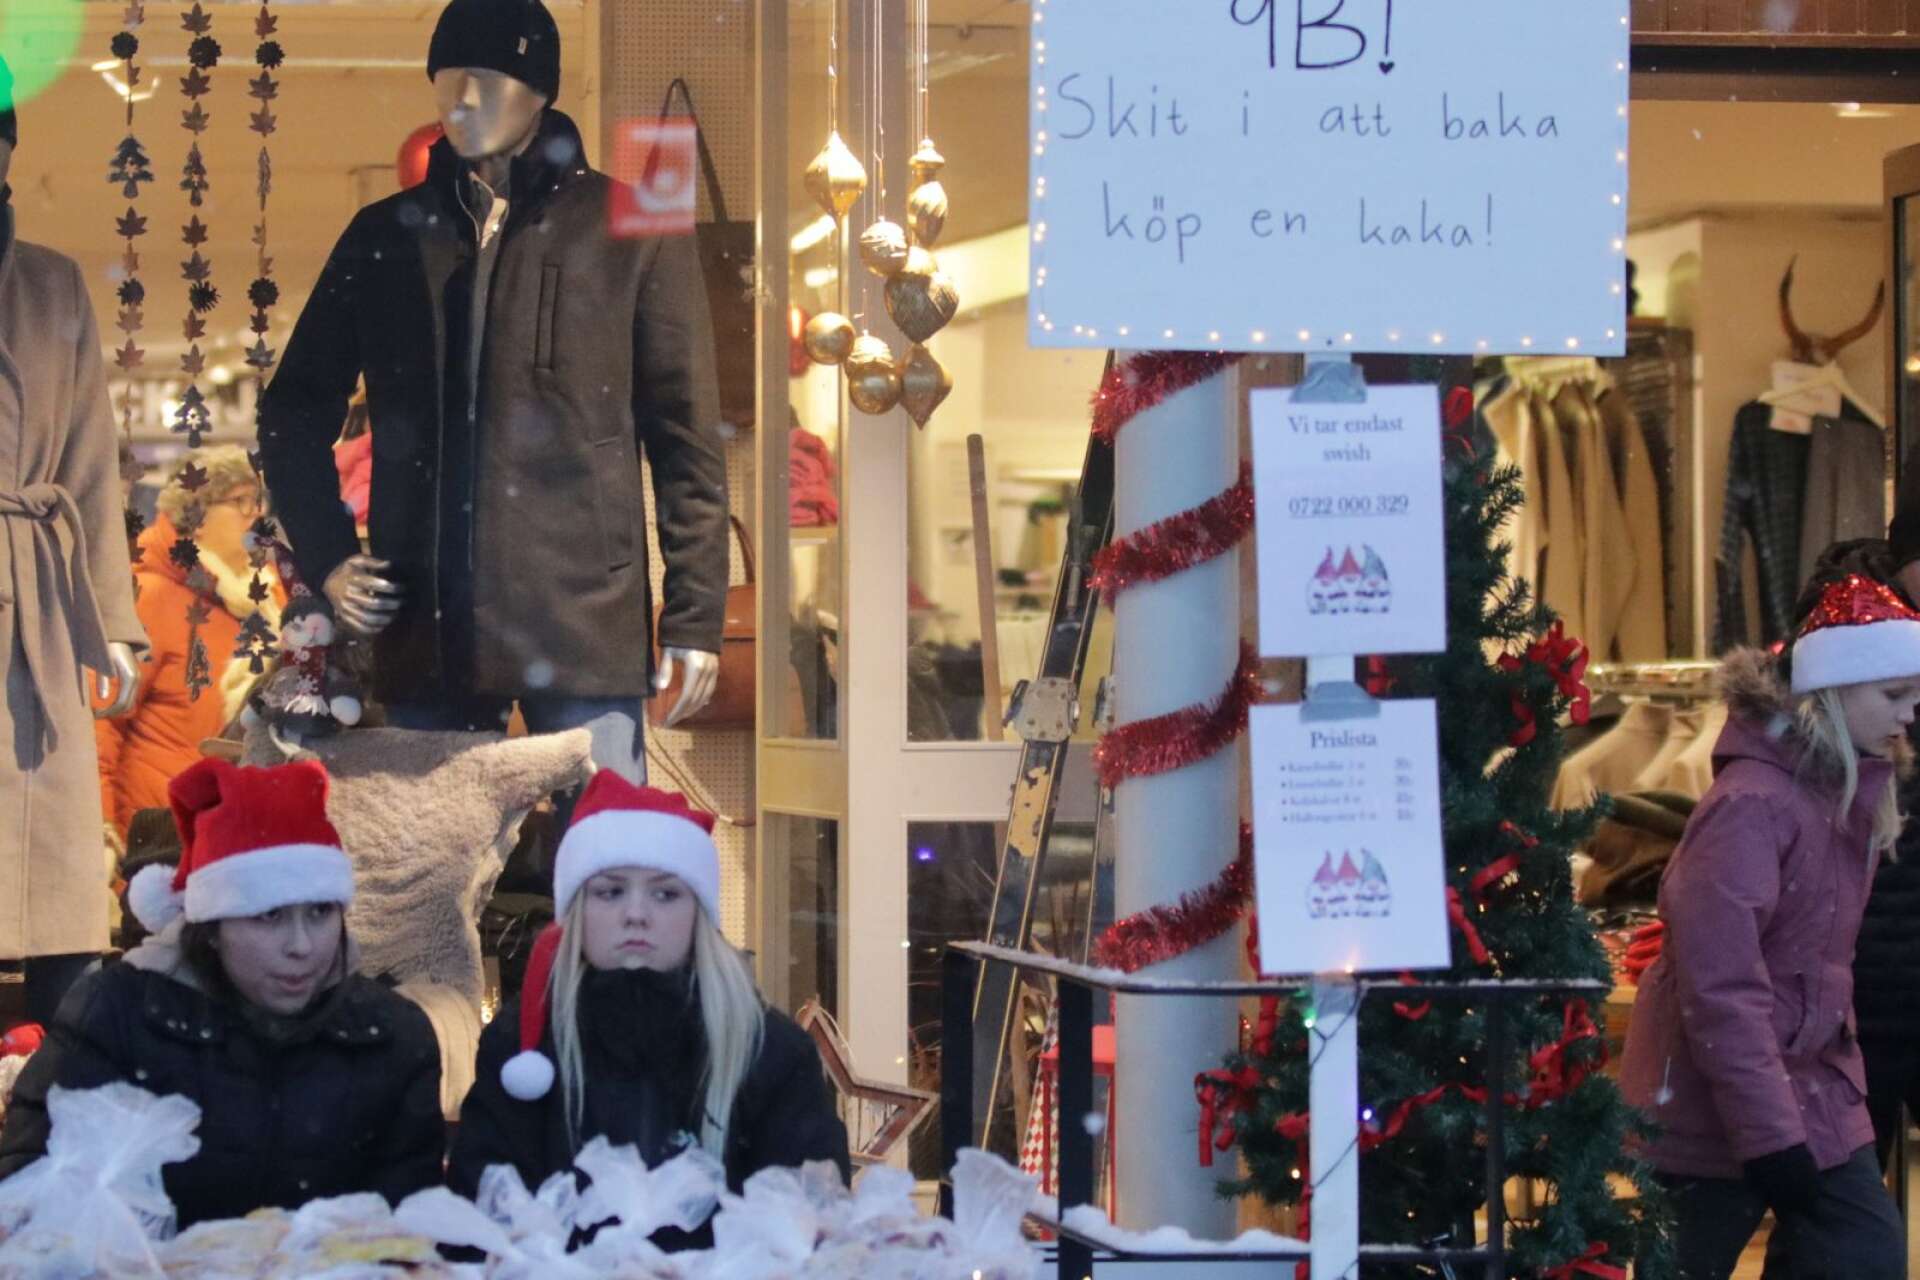 Sally och Anna-Clara i Bengtsgårdens 9B sålde fika med sin slogan ”Skit i att baka - köp en kaka”.